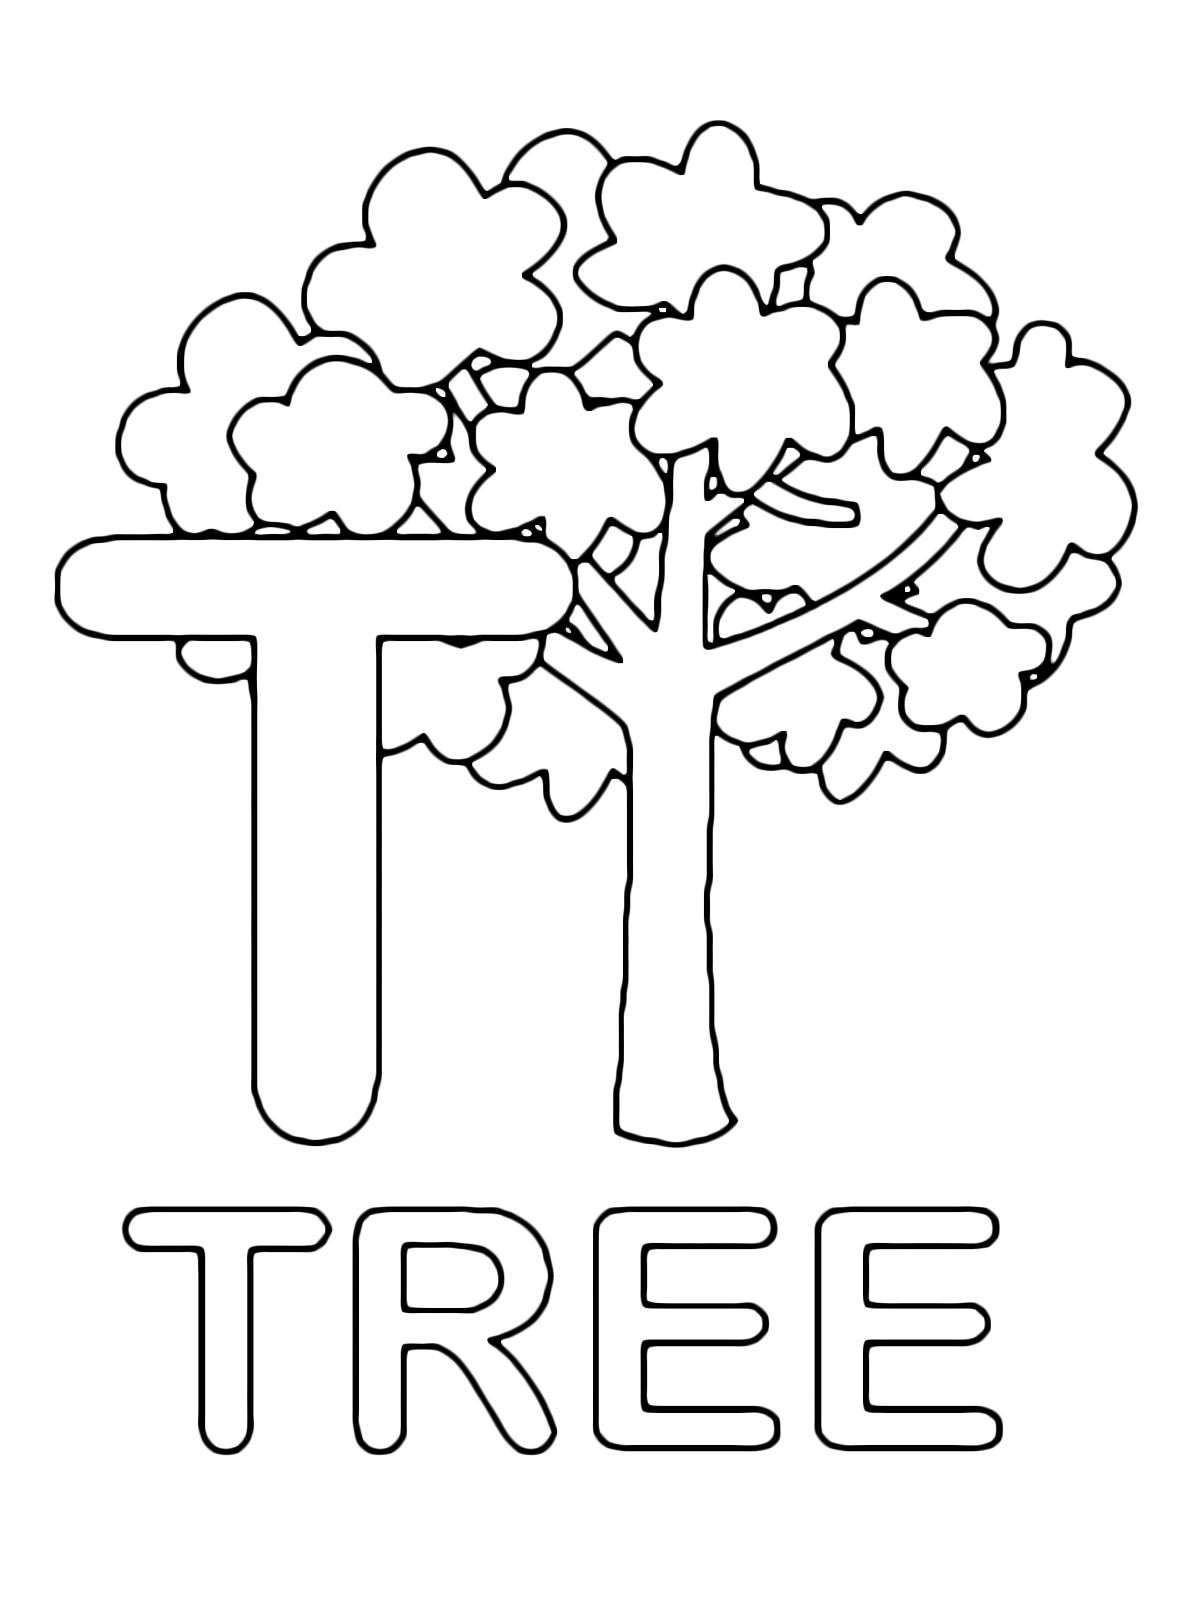 Lettere e numeri - Lettera T in stampatello di tree (albero) in Inglese